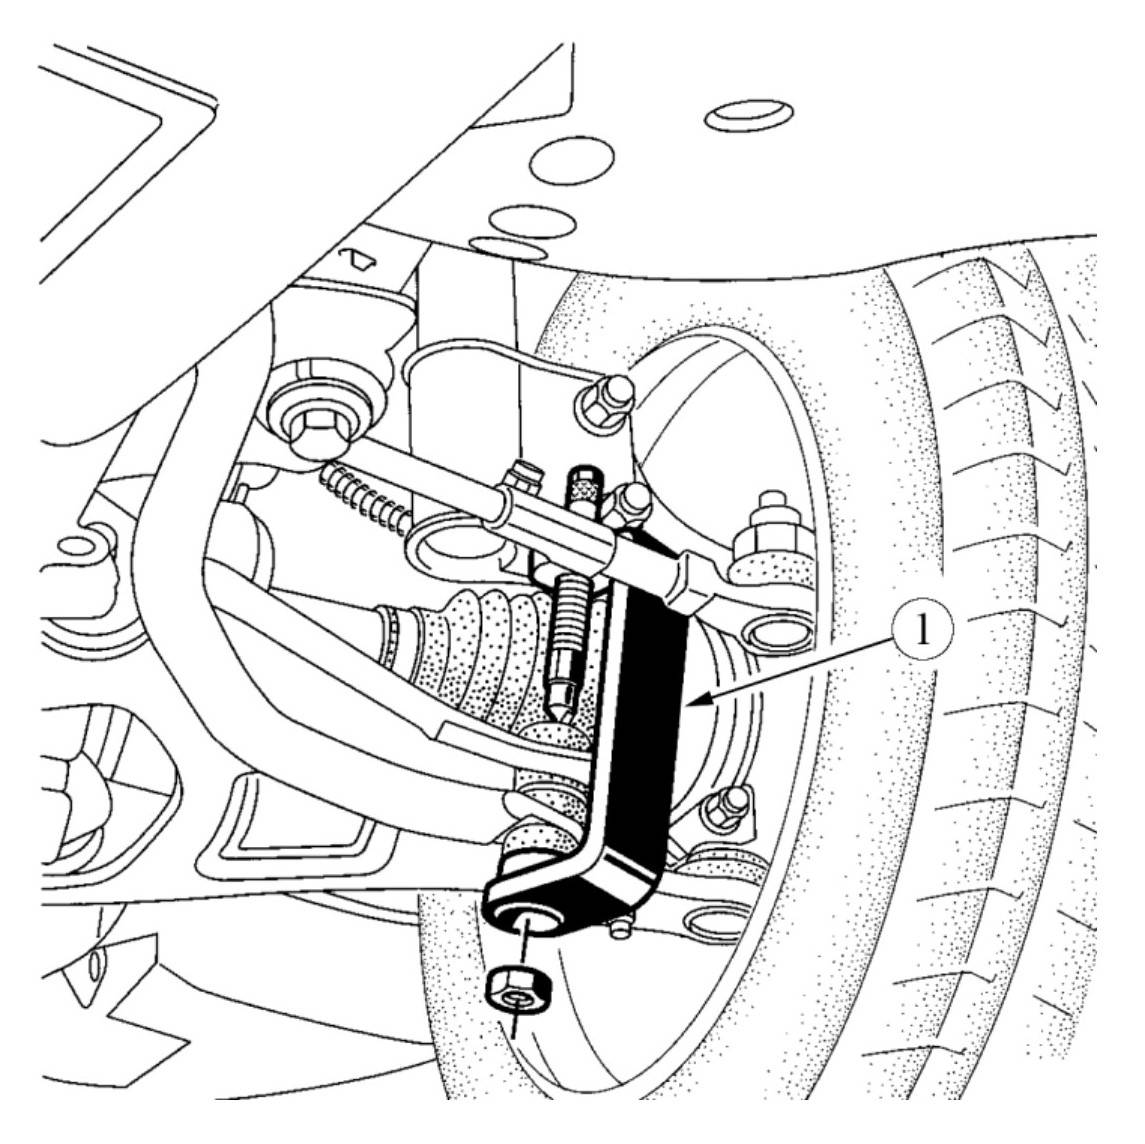 Рычаг передней подвески и растяжка подрамника — снятие и установка на lada largus. подвеска и колеса